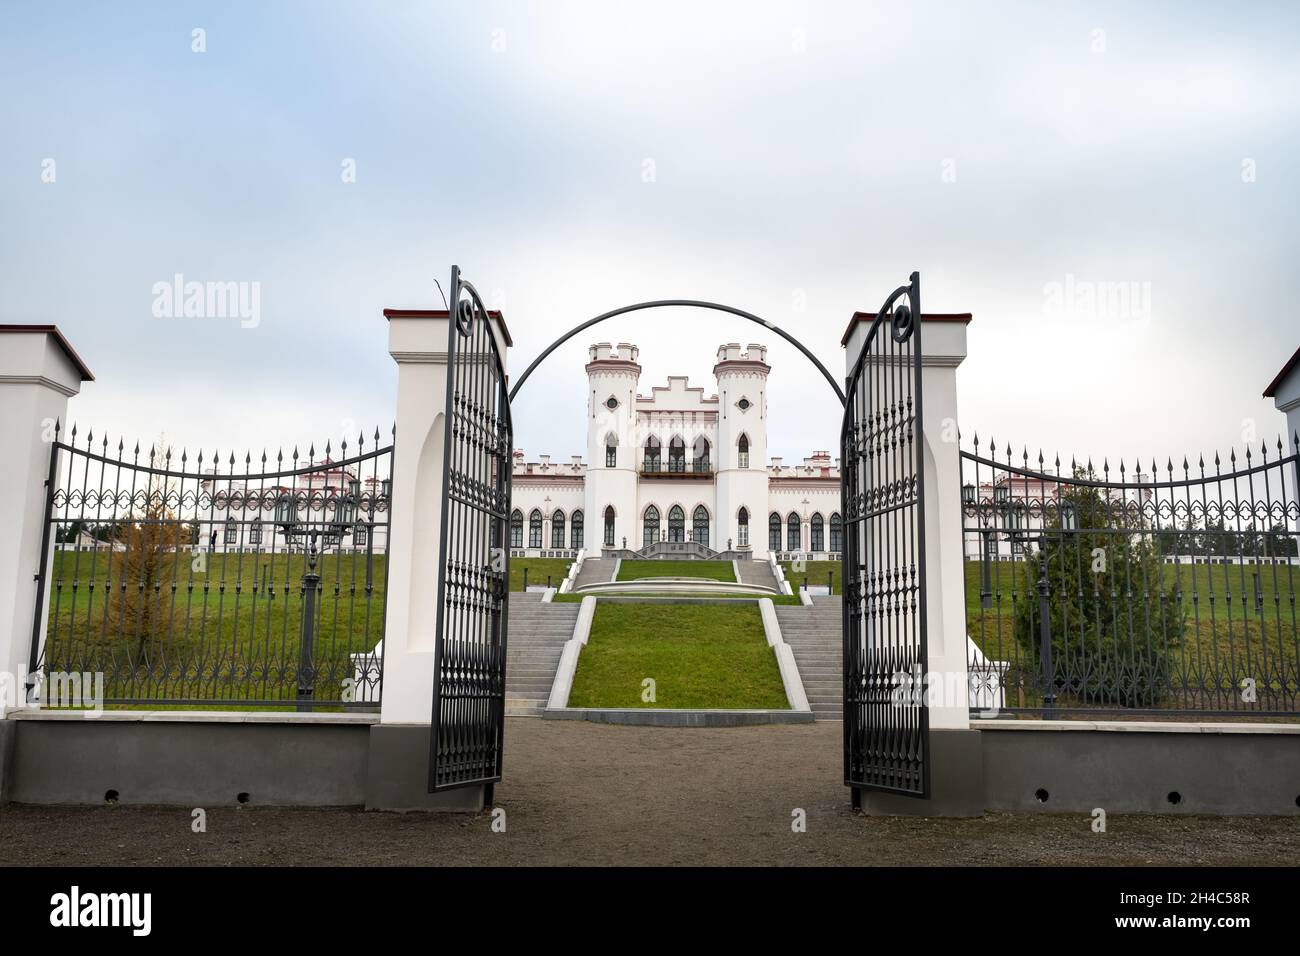 Puslovsky Palace. Autumn Kossovsky Castle in Belarus. Stock Photo